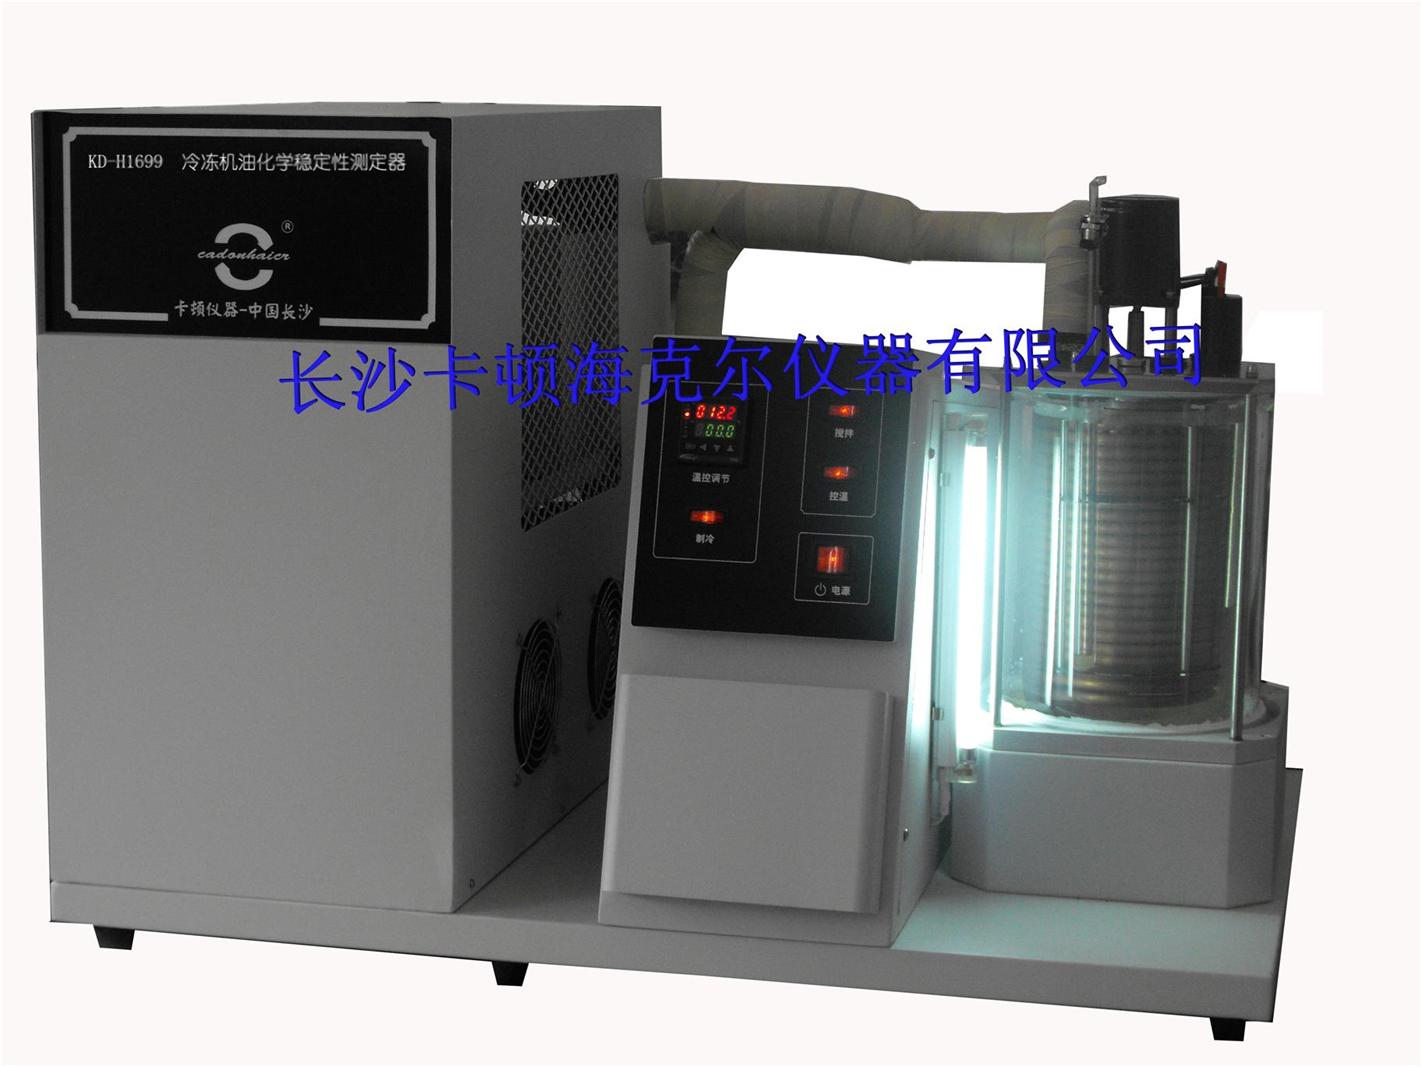 卡顿KD-H1699冷冻机油化学稳定性测定仪